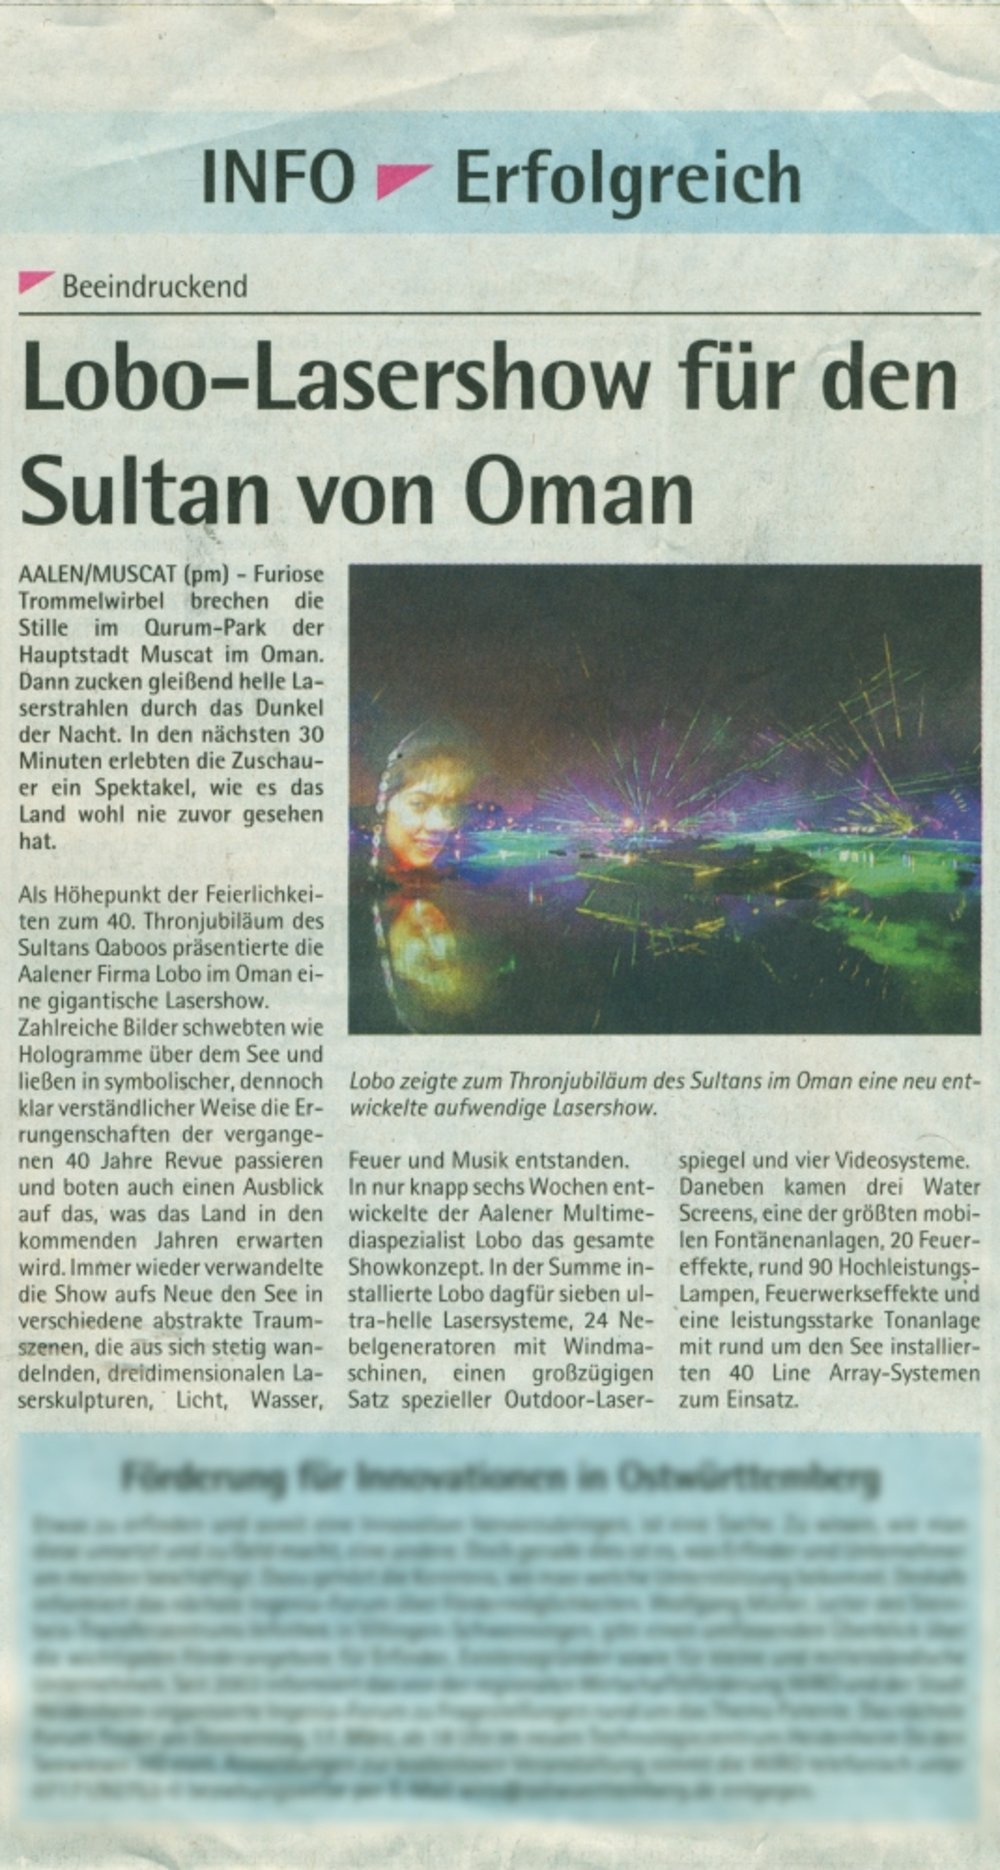 Ipf und Jagst Zeitung INFO Der Suedfinder 16 Maerz 2011 S3 Lasershow fuer den Sultan von Oman.